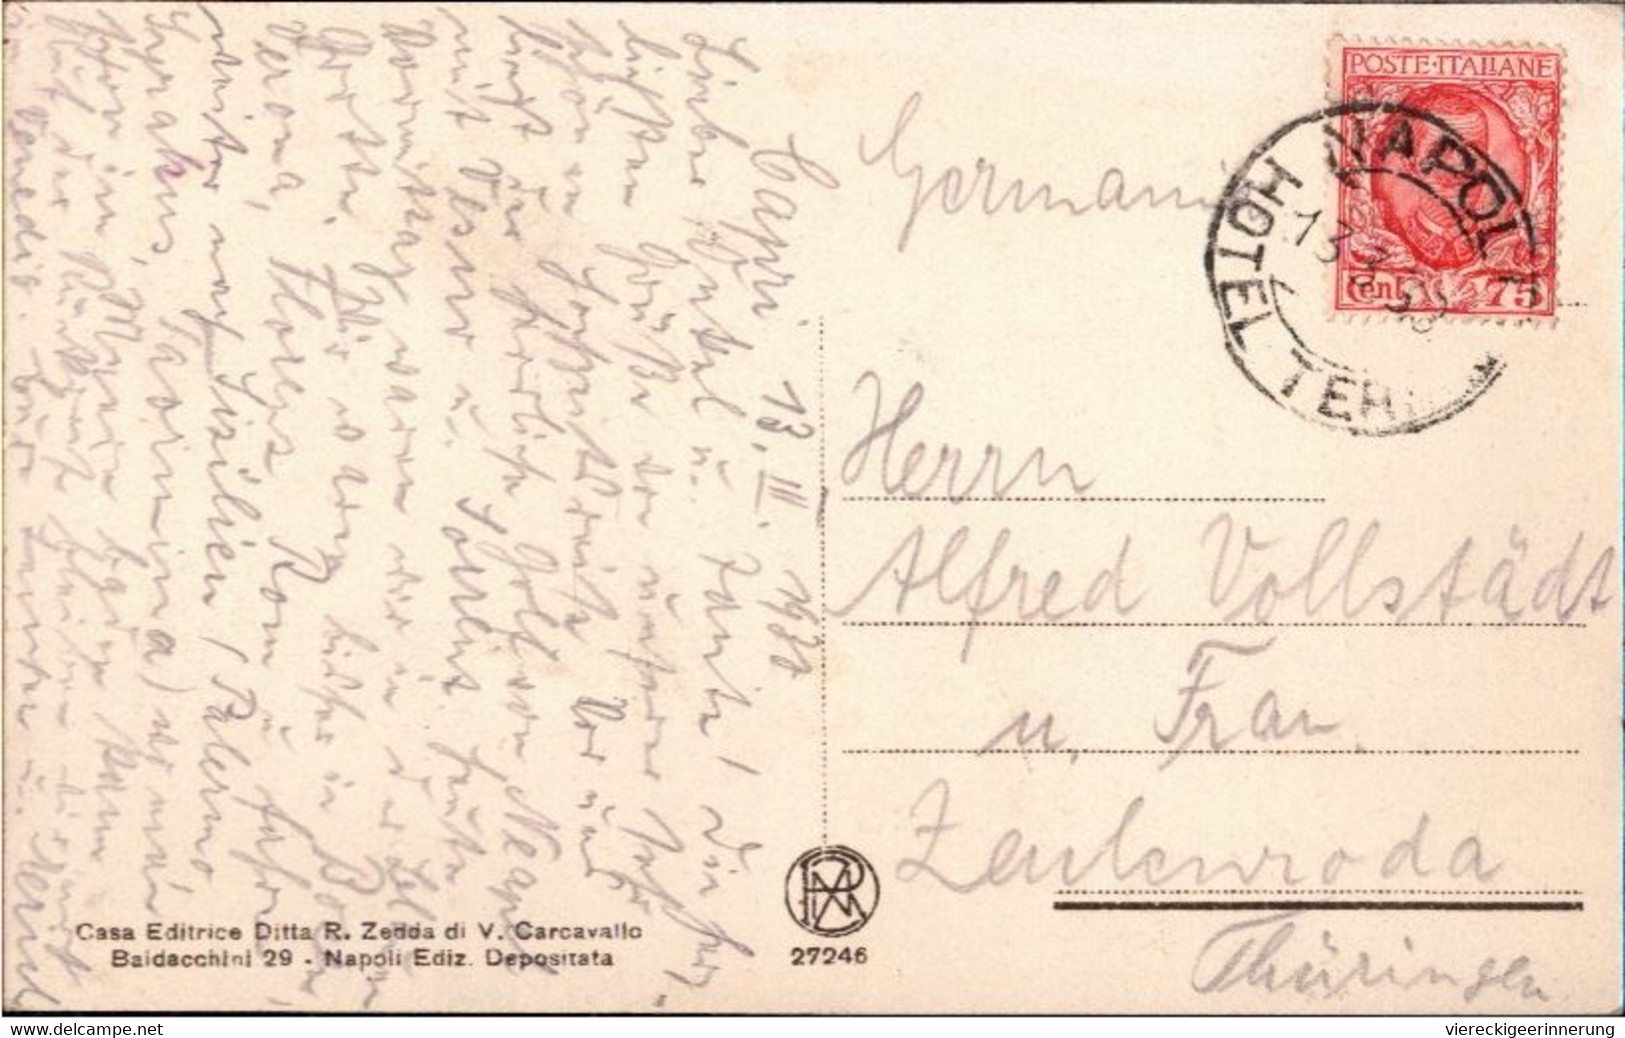 ! 1930 Alte Ansichtskarte Aus Capri, Marina Grande E Punta Di Tibero, Hotelstempel, Italien - Other & Unclassified